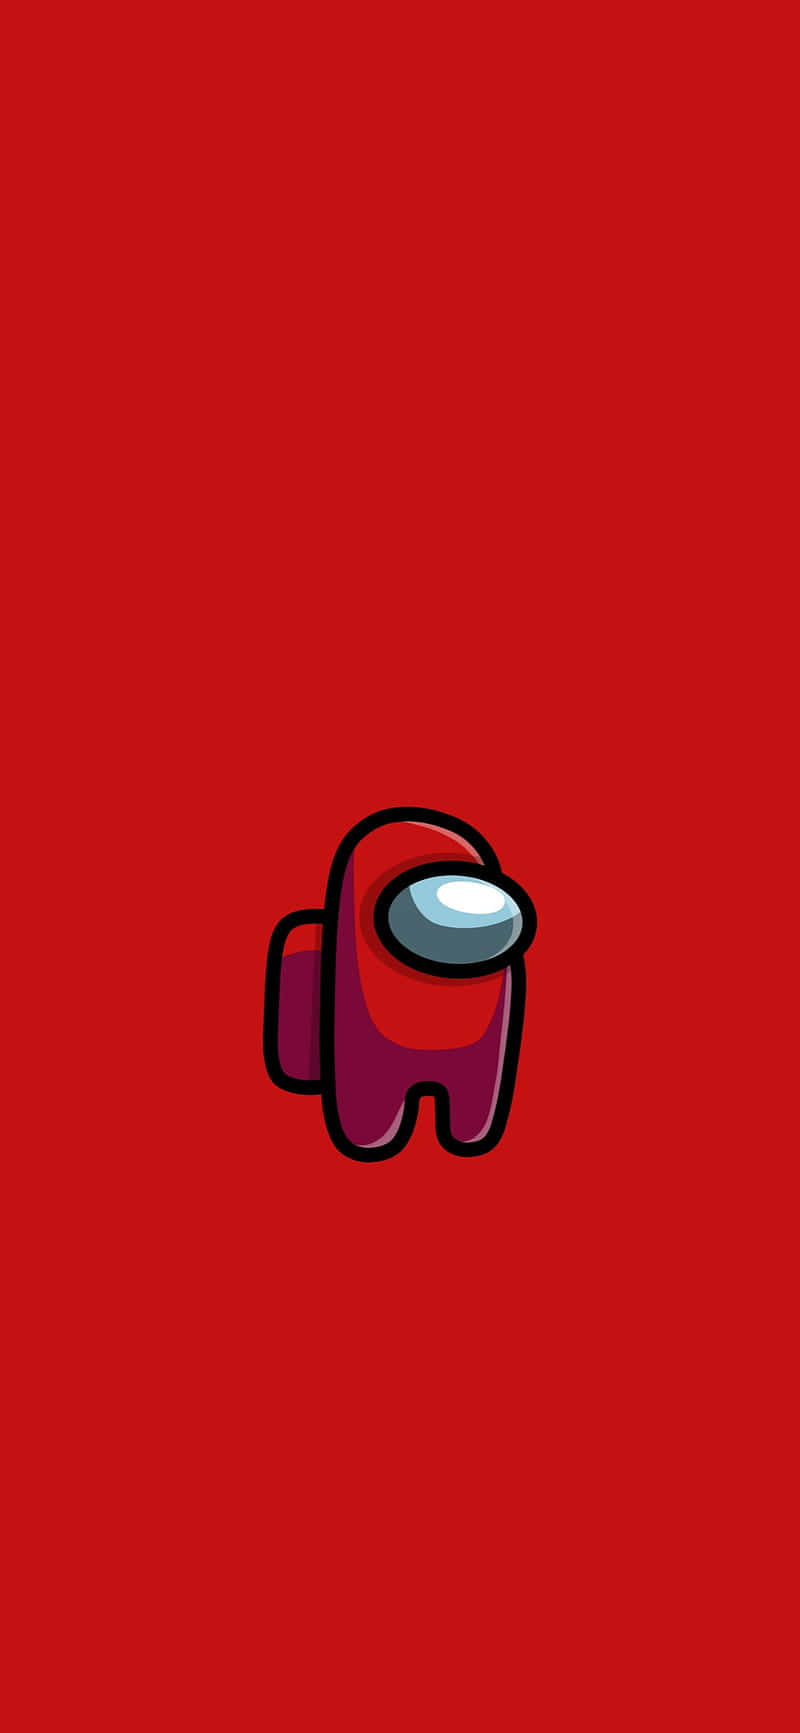 Unosfondo Rosso Con Un Robot Rosso Su Di Esso Sfondo